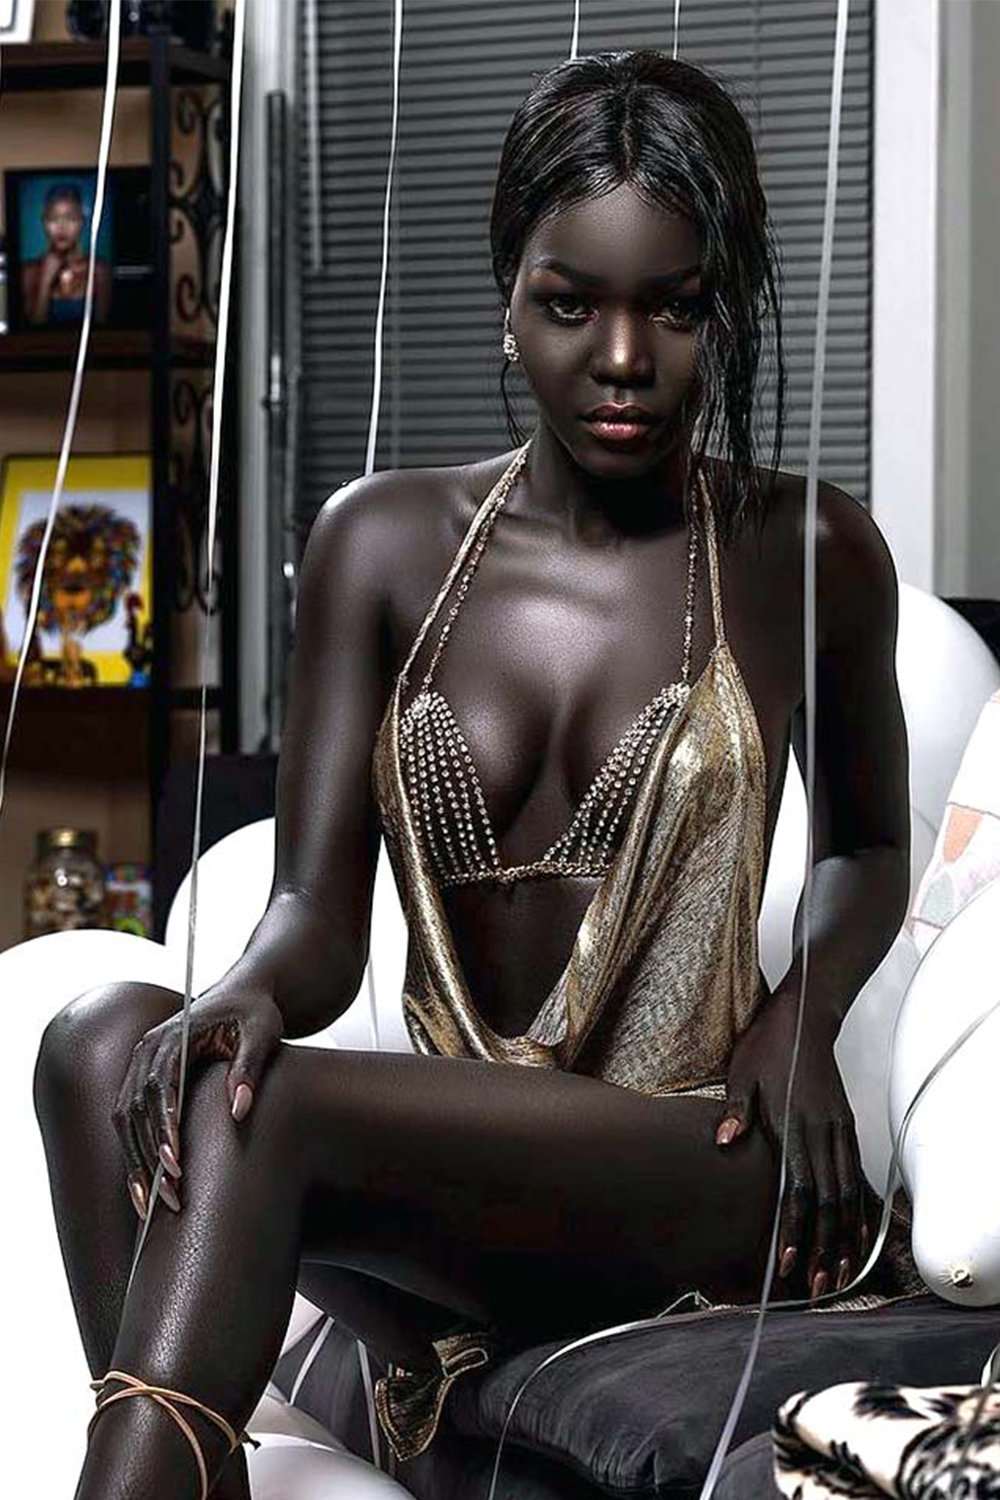 Полнометражное негритянки. Няким Гатвеч. Нуаким Гатвеч модель из Южного Судана. Королева тьмы модель из Южного Судана Ньяким. Nyakim Gatwech (Ньяким Гатвеч) - 24-летняя модель.